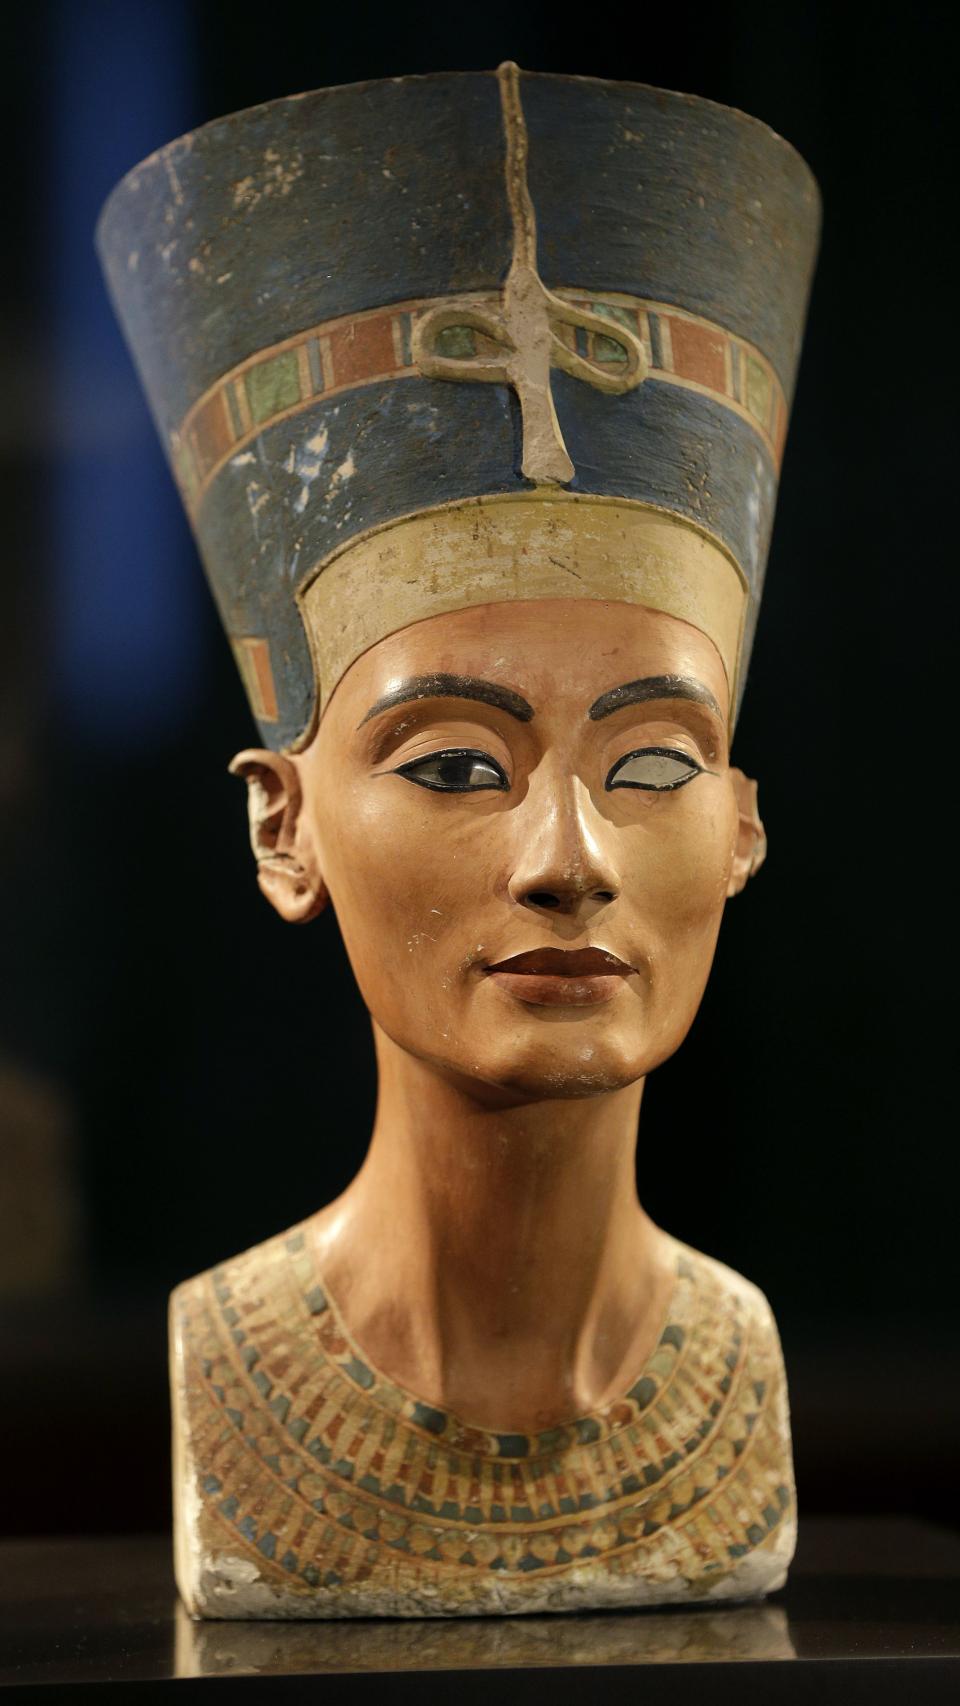 El maquillaje del antiguo Egipto se puede apreciar en el busto de Nefertiti.